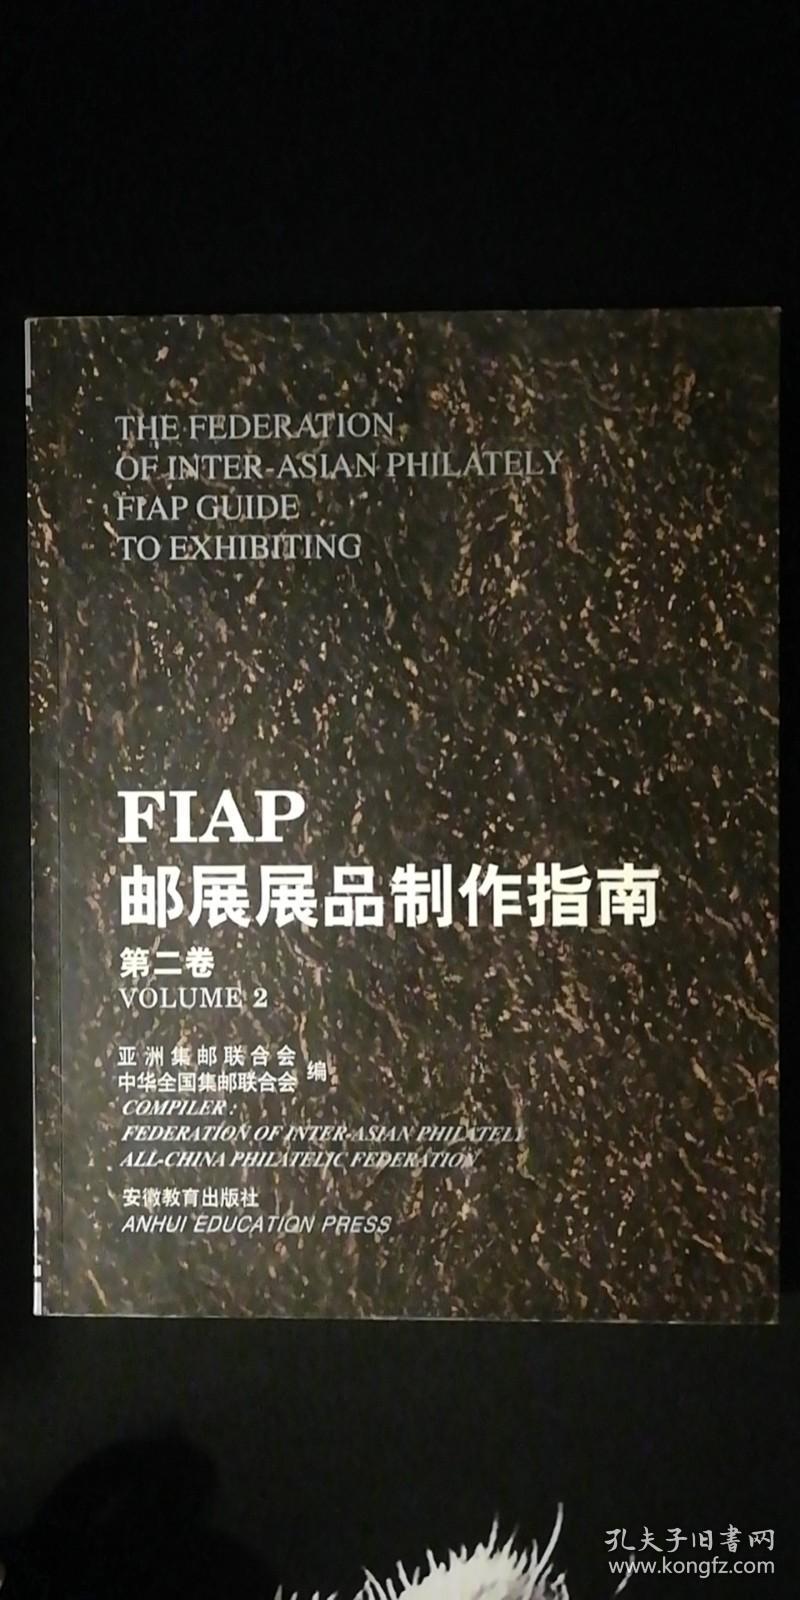 FIAP 邮展展品制作指南 第二卷